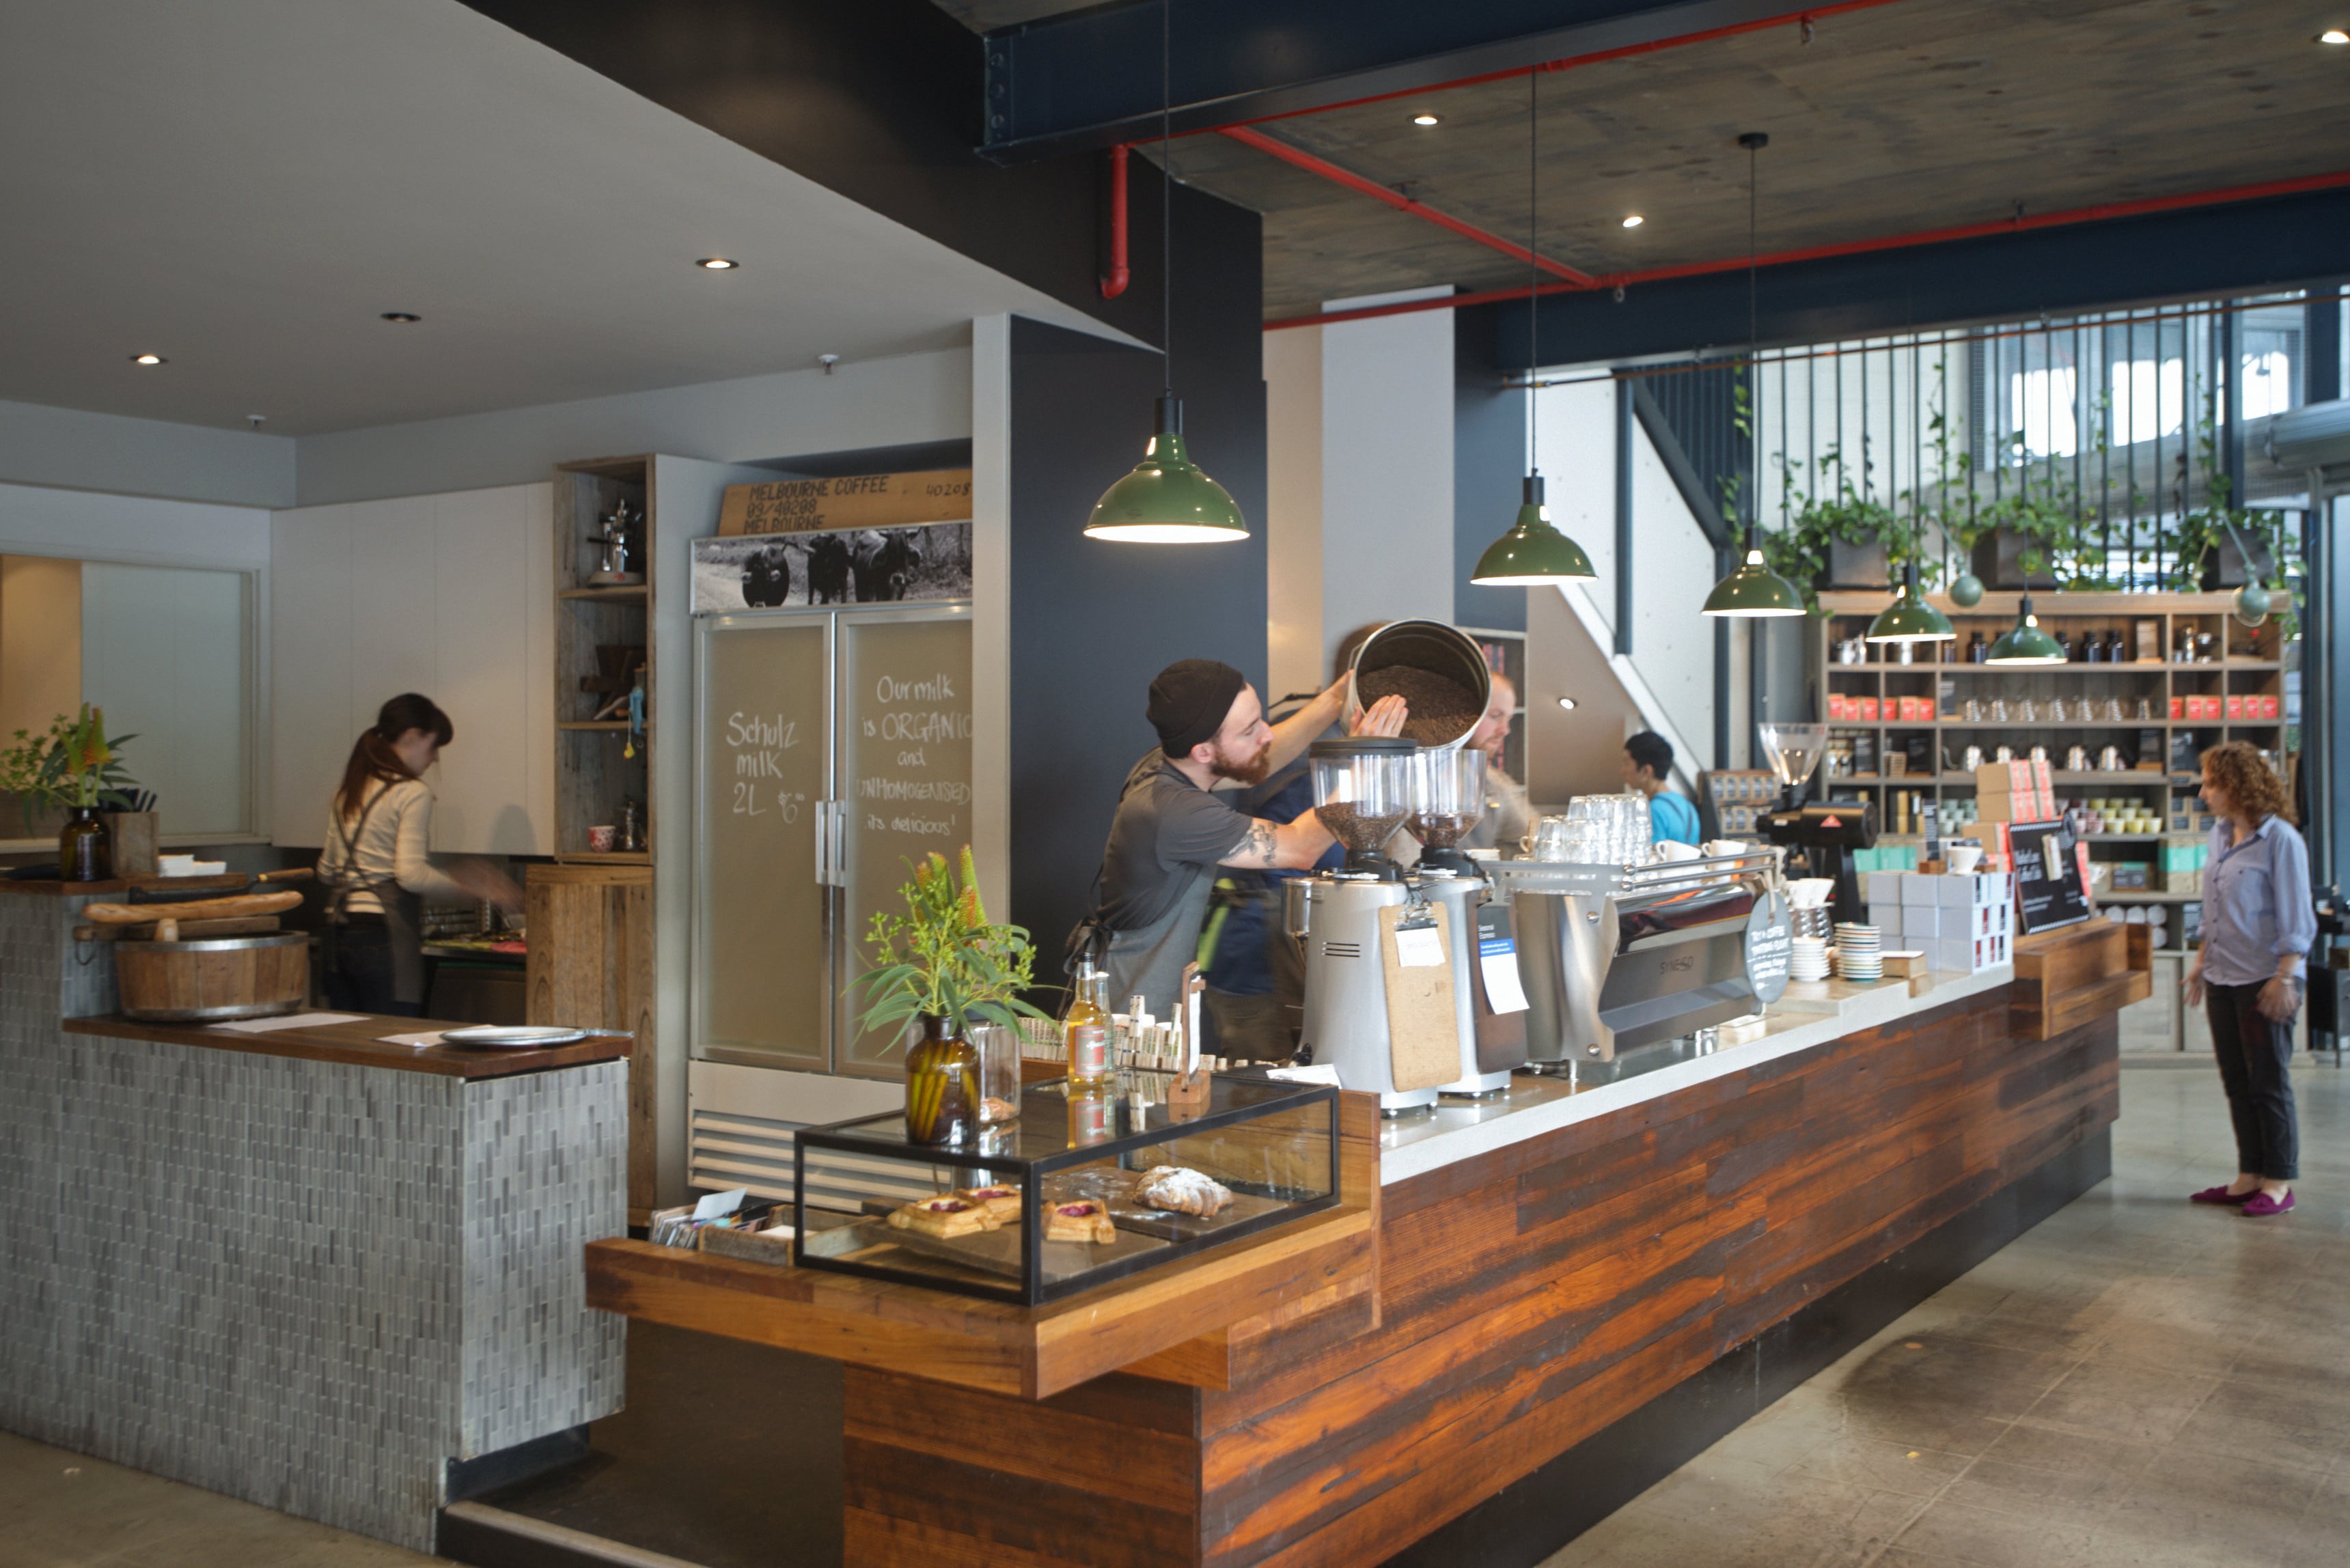 Melbourne's best coffee shops -Tourism Australia